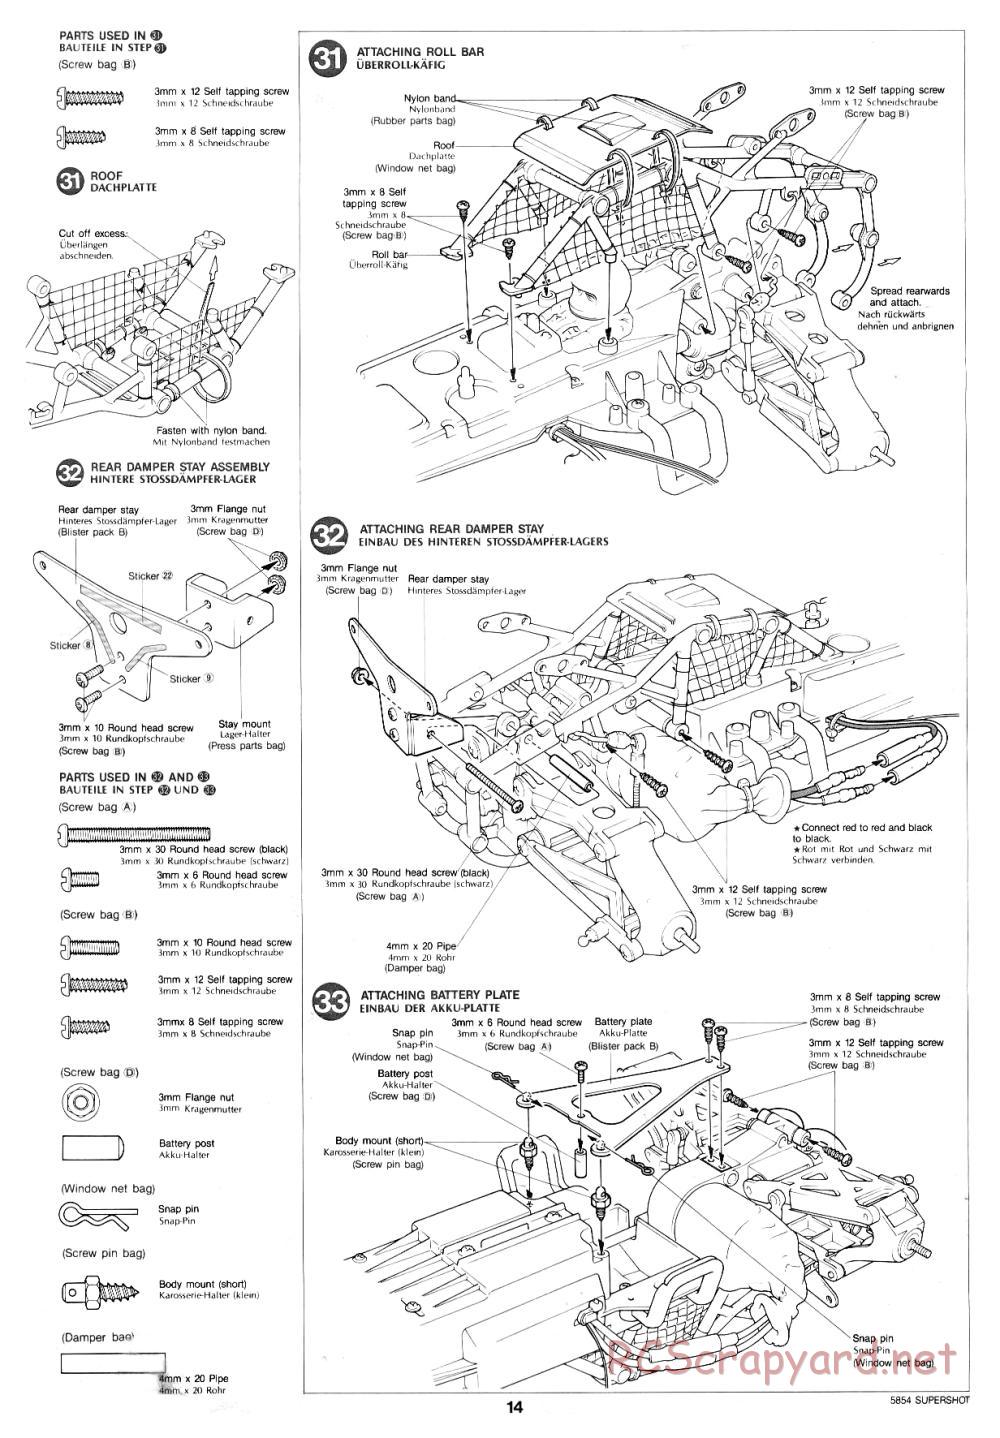 Tamiya - Supershot - 58054 - Manual - Page 14